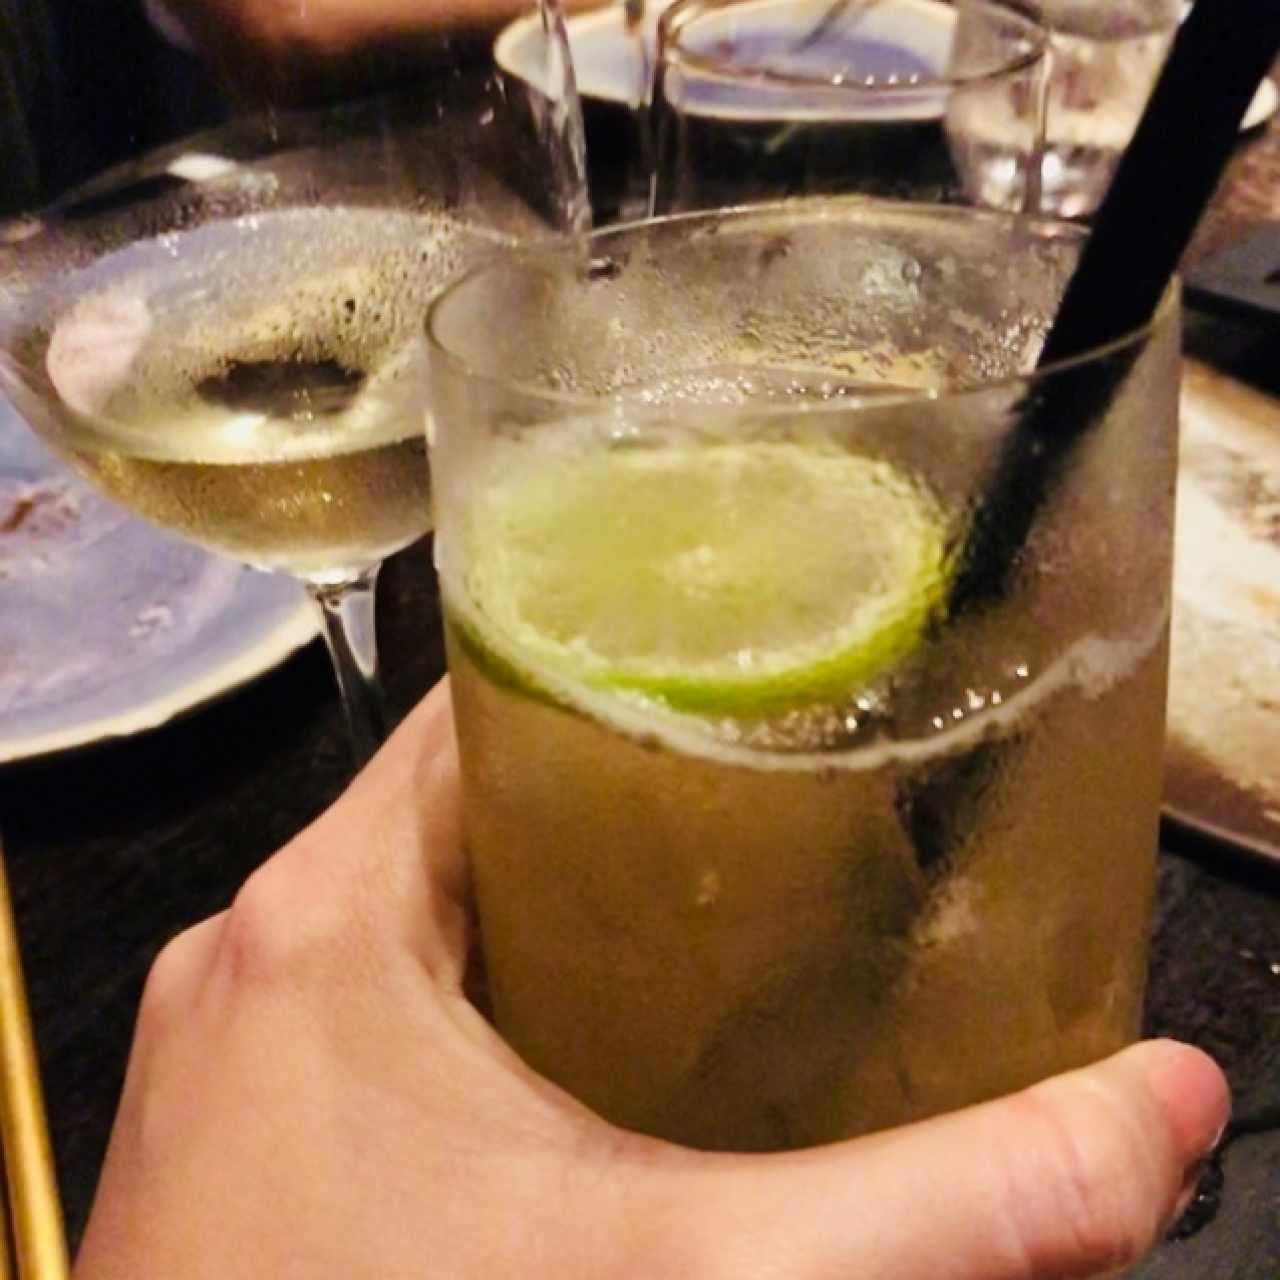 If you are not drinking, preguntale al server que te haga este cocktail de te verde sin azucar😜